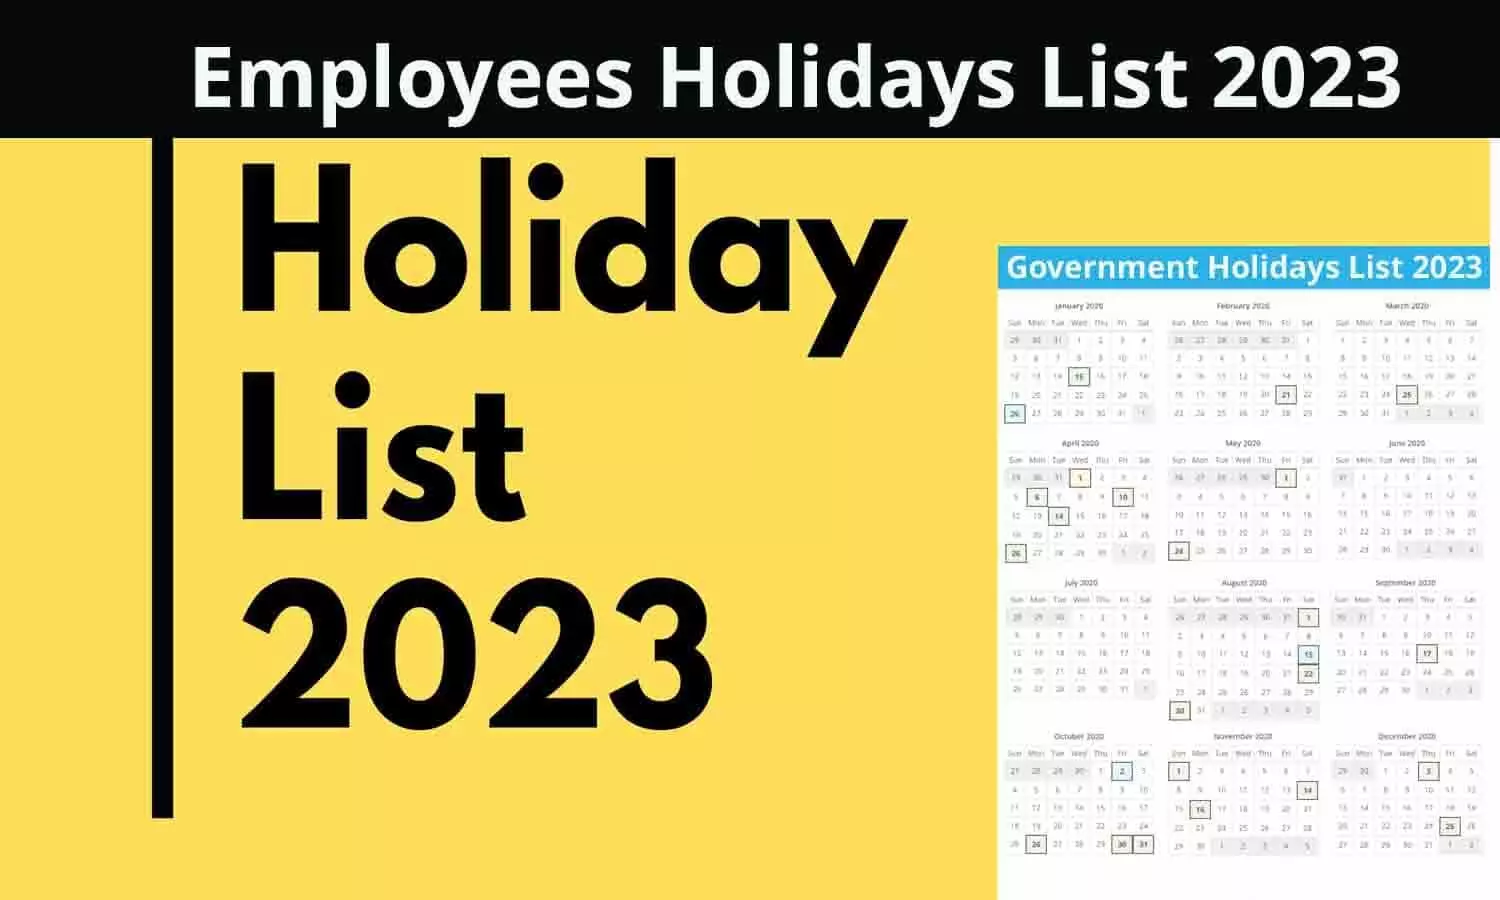 Employees Holidays List 2023: कर्मचारियों के लिए गुड न्यूज़, सार्वजनिक और प्रतिबंधित अवकाश की लिस्ट जारी, फटाफट यहाँ से देखे सरकारी कैलेंडर | Employees Holidays ...